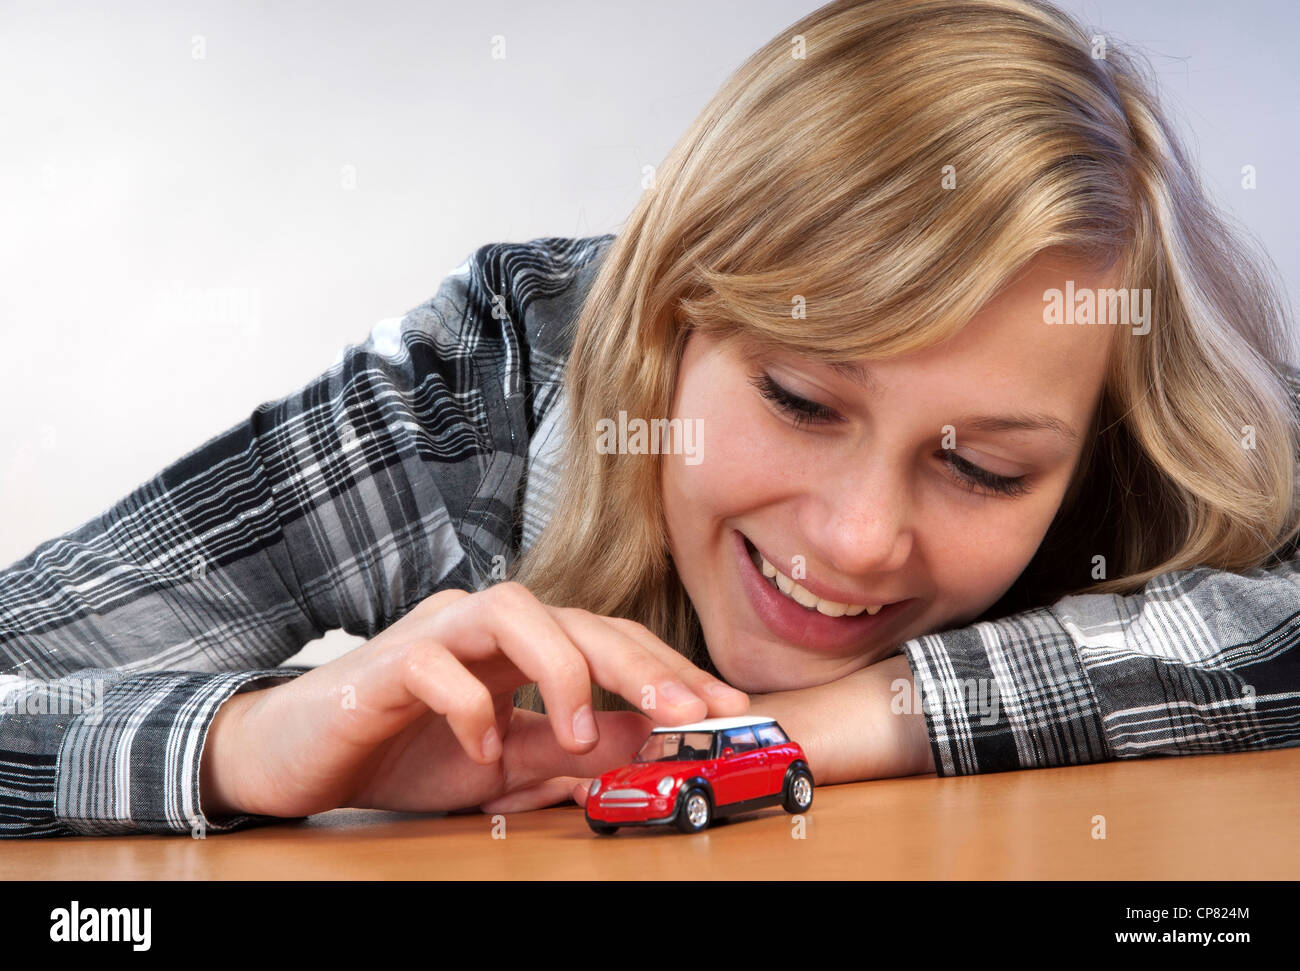 Junge hübsche Frau mit einem Modellauto als Symbol für den Traum von ihrem eigenen Auto. Stockfoto